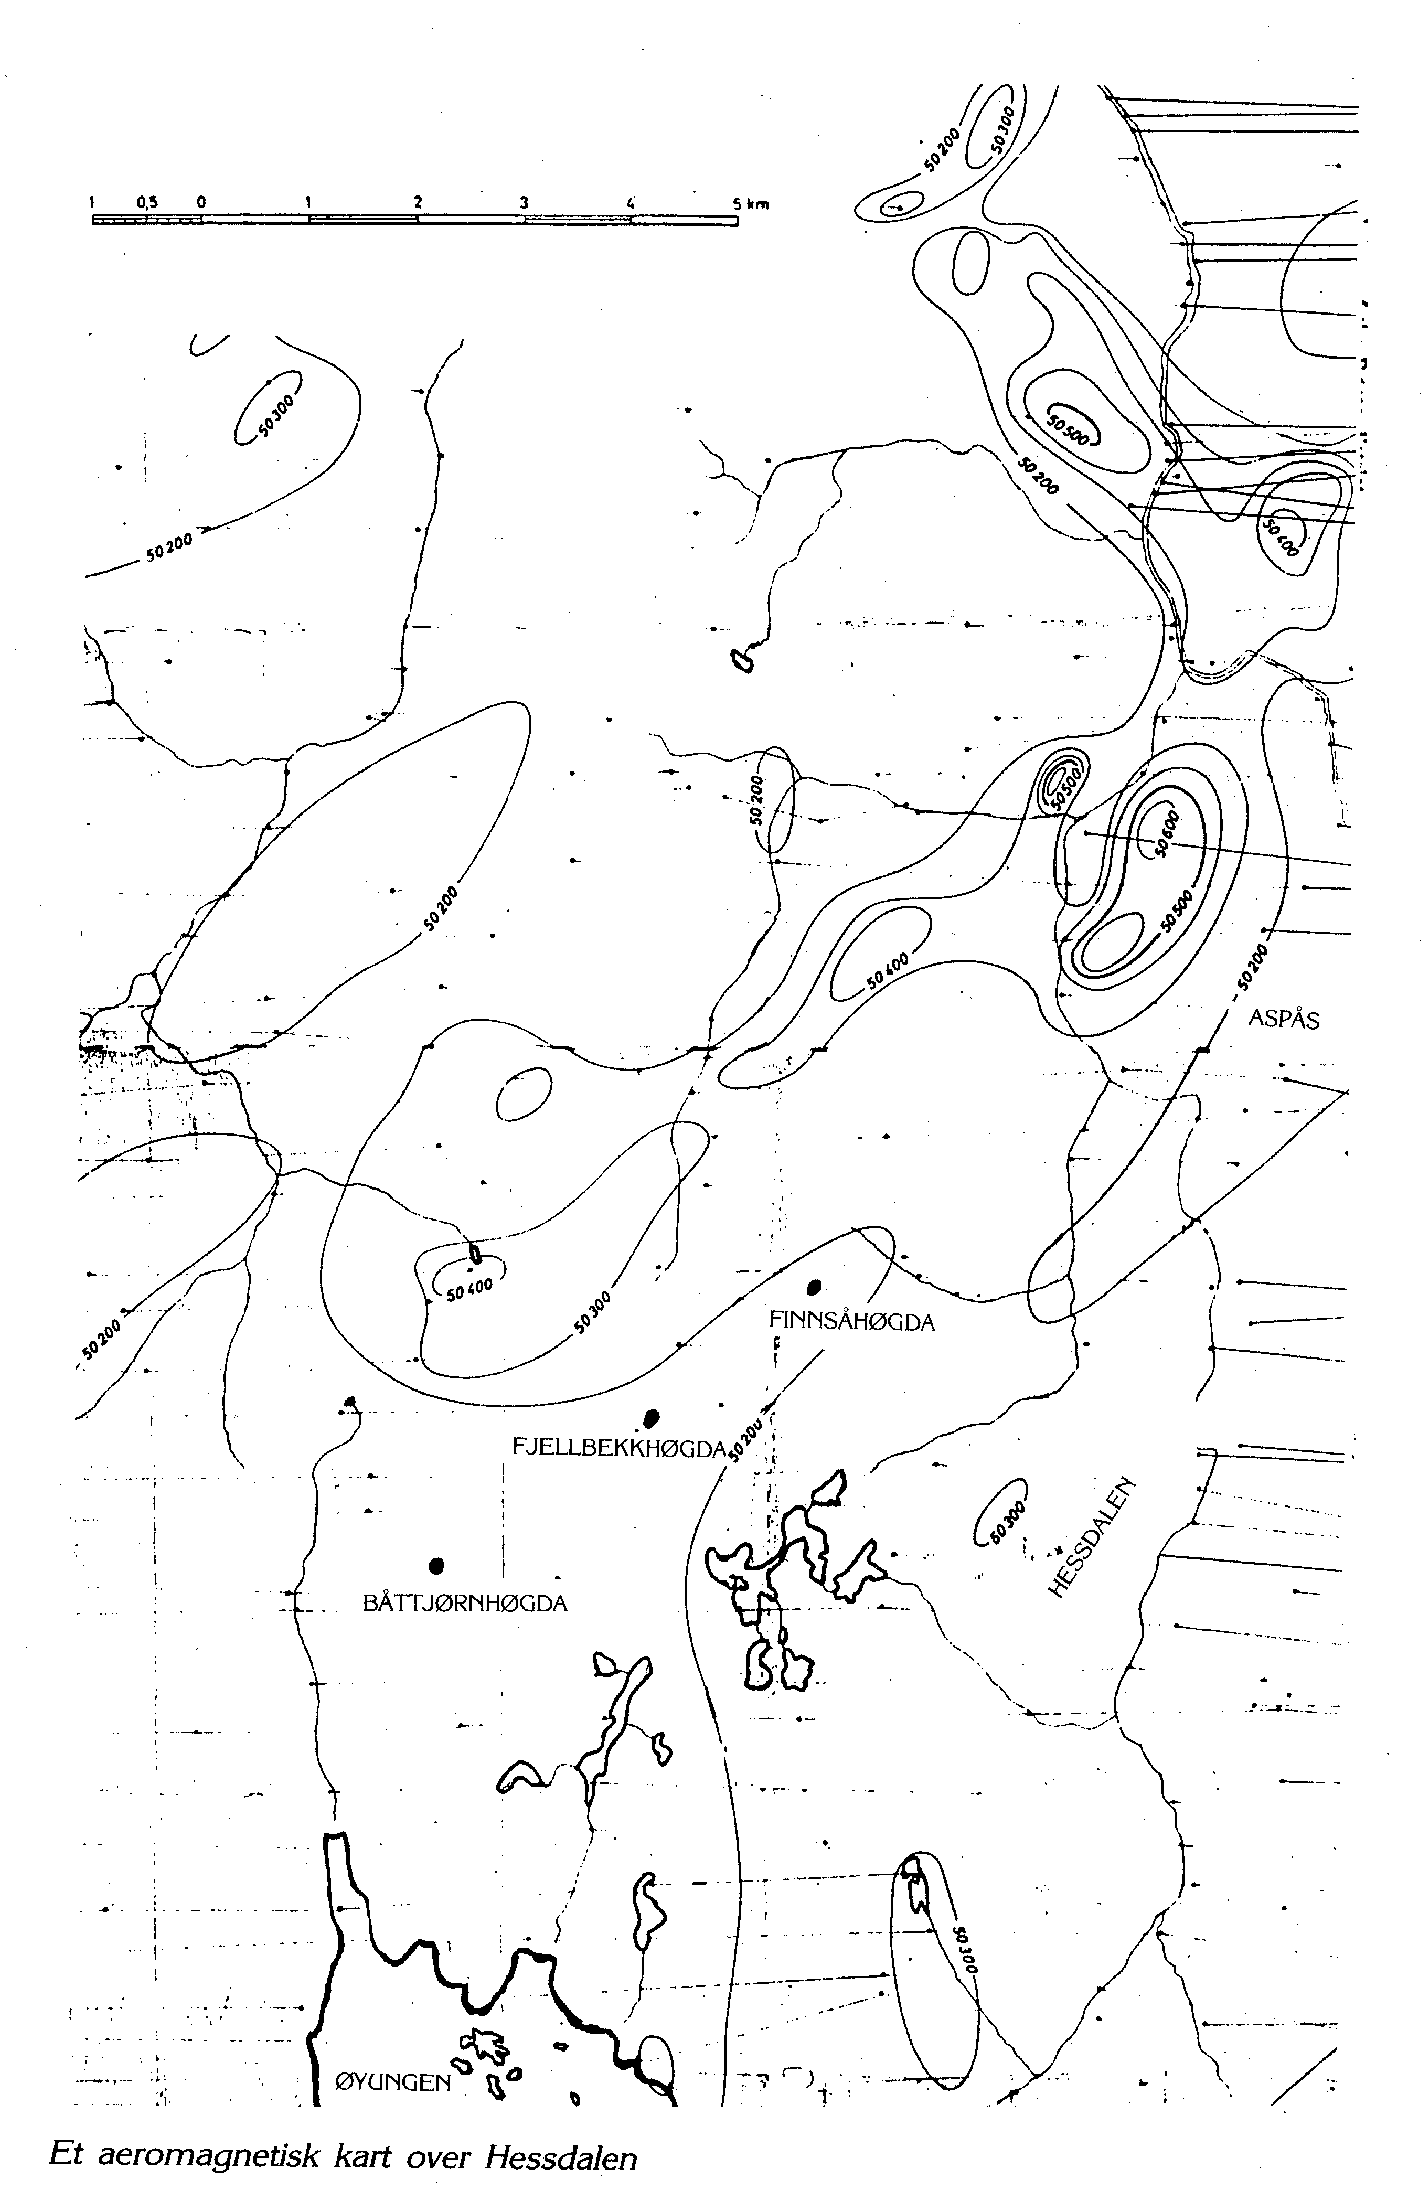 Hessdalen, aeromagnetisk kart